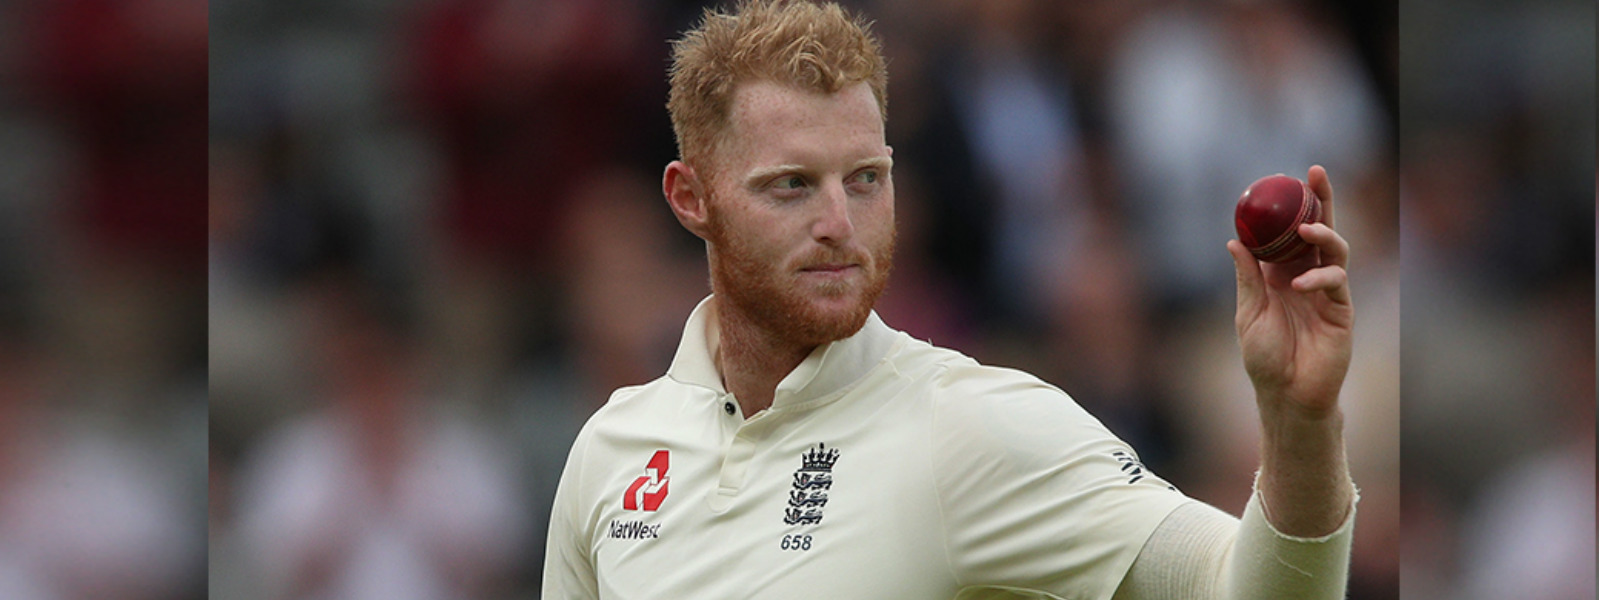 Ben Stokes to return to England's Test team